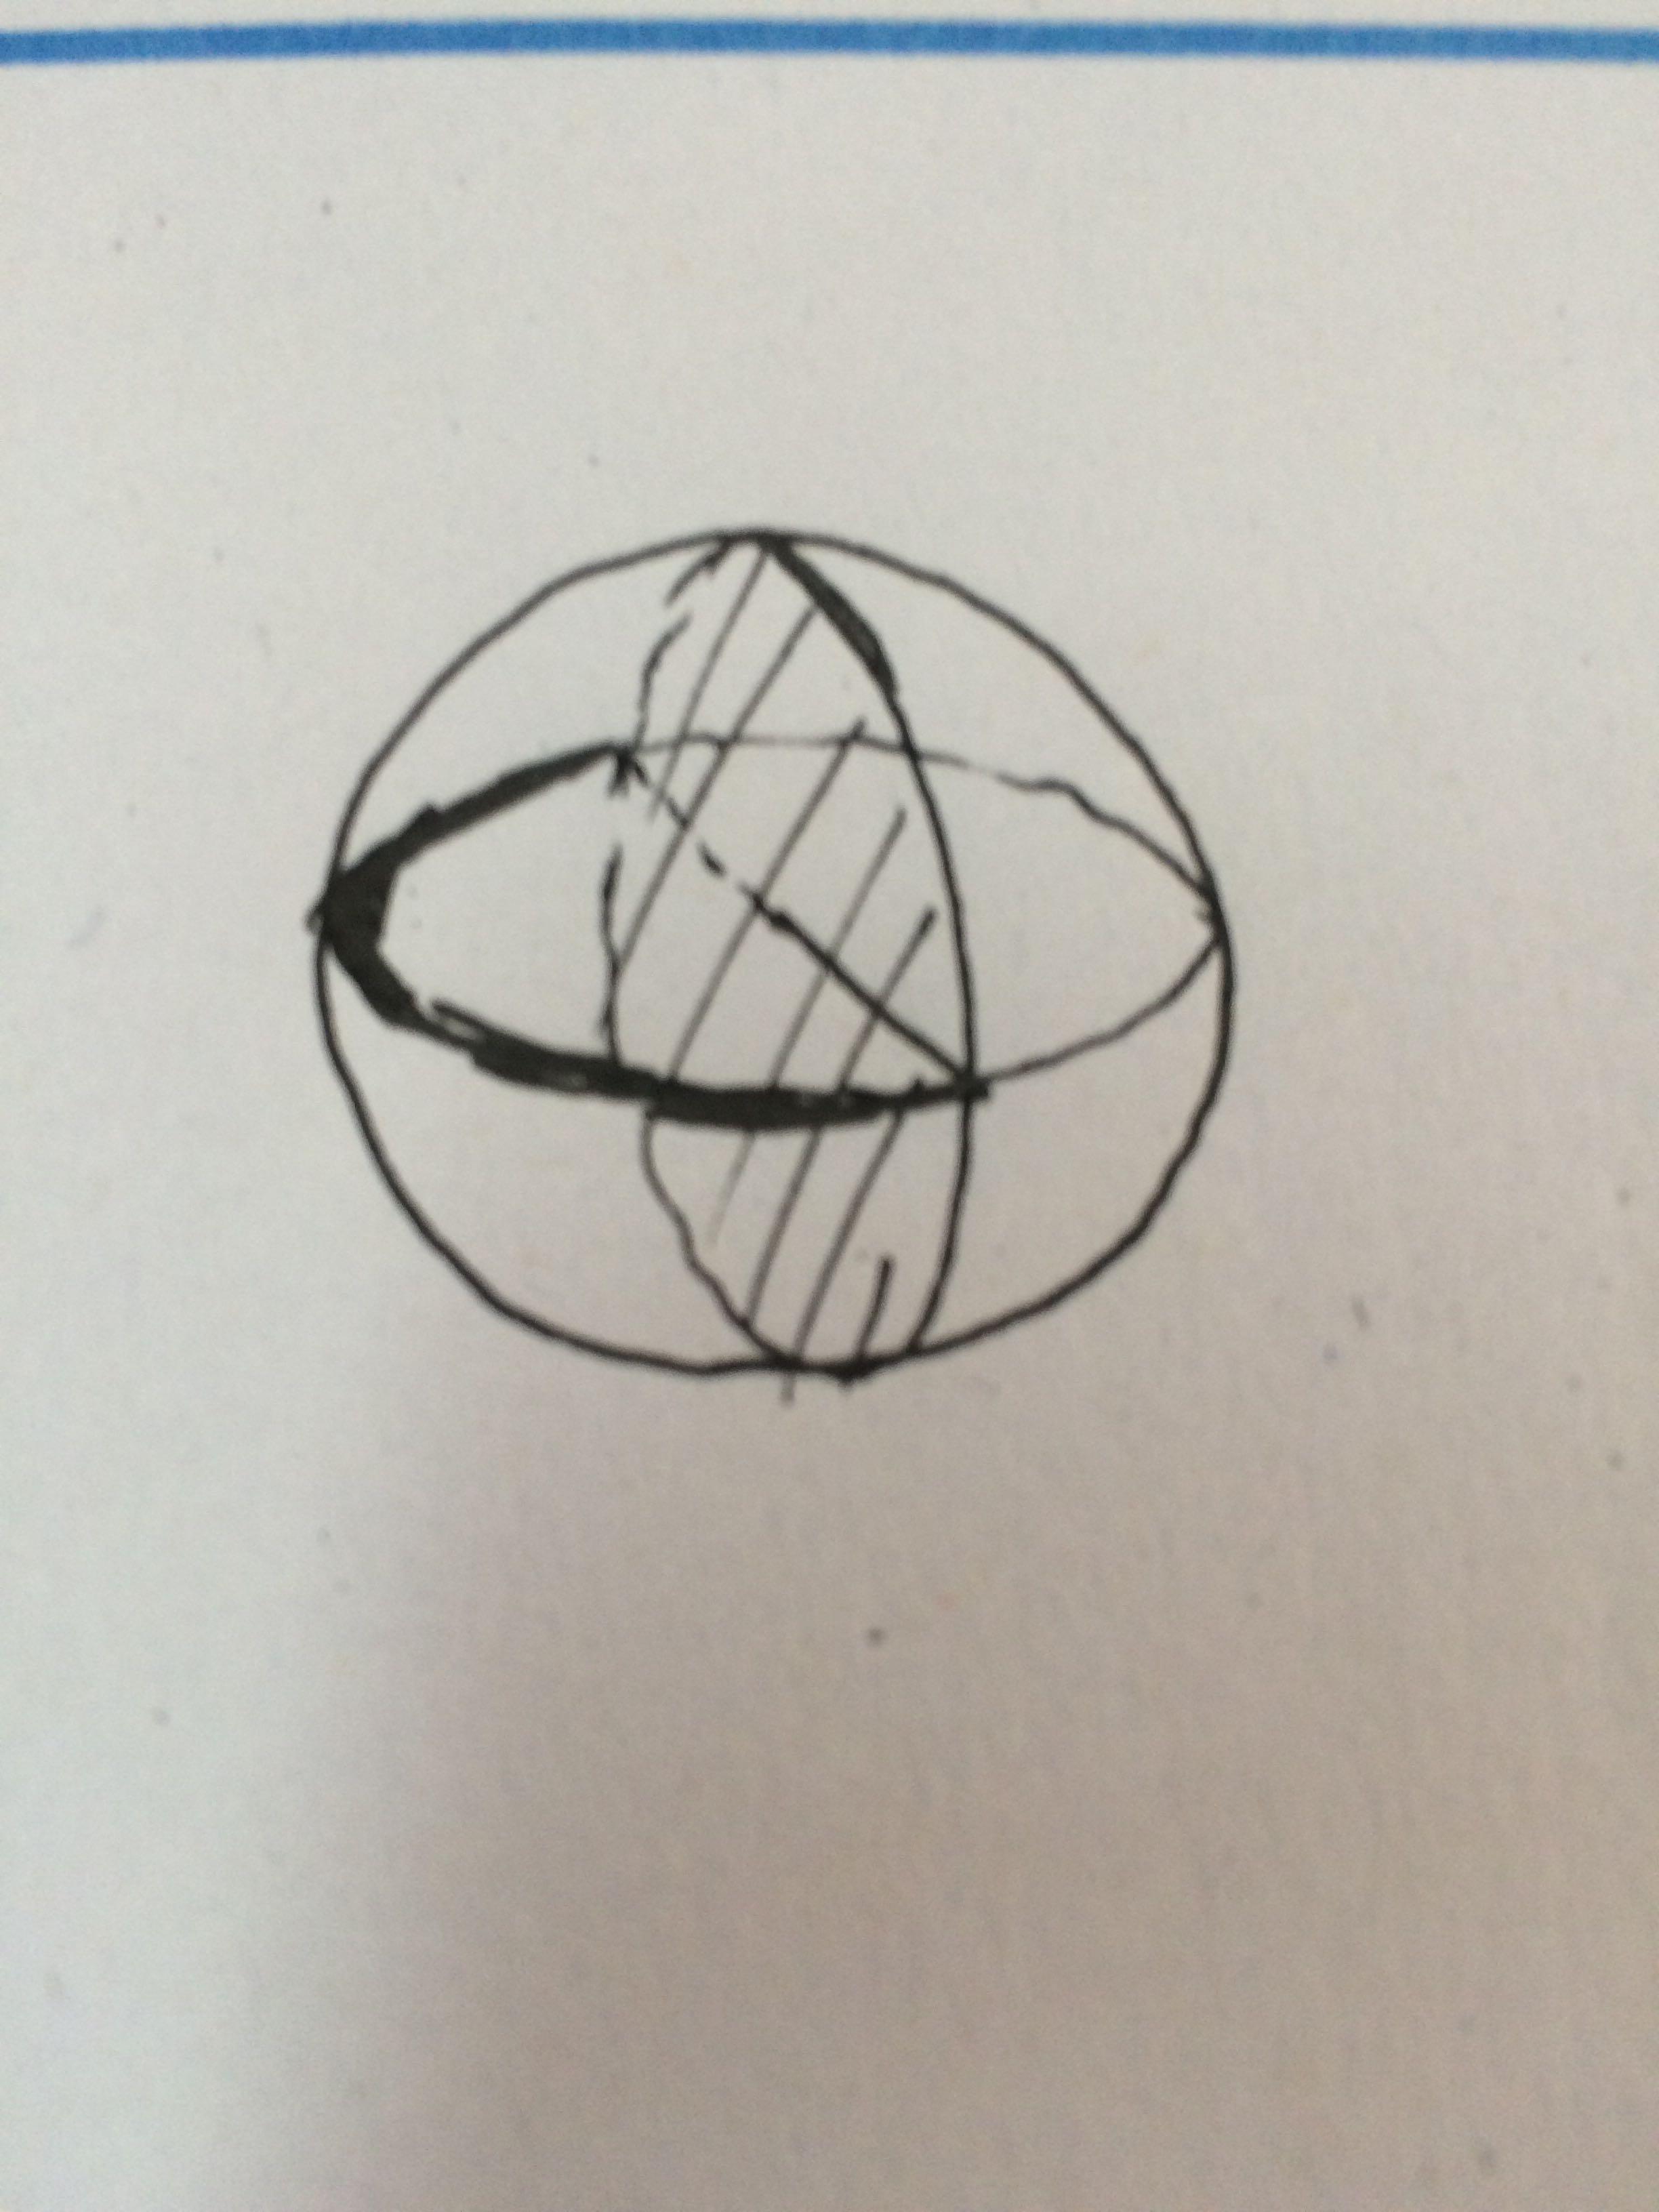 球的体积为什么不能直接用圆面积乘以0.5半径